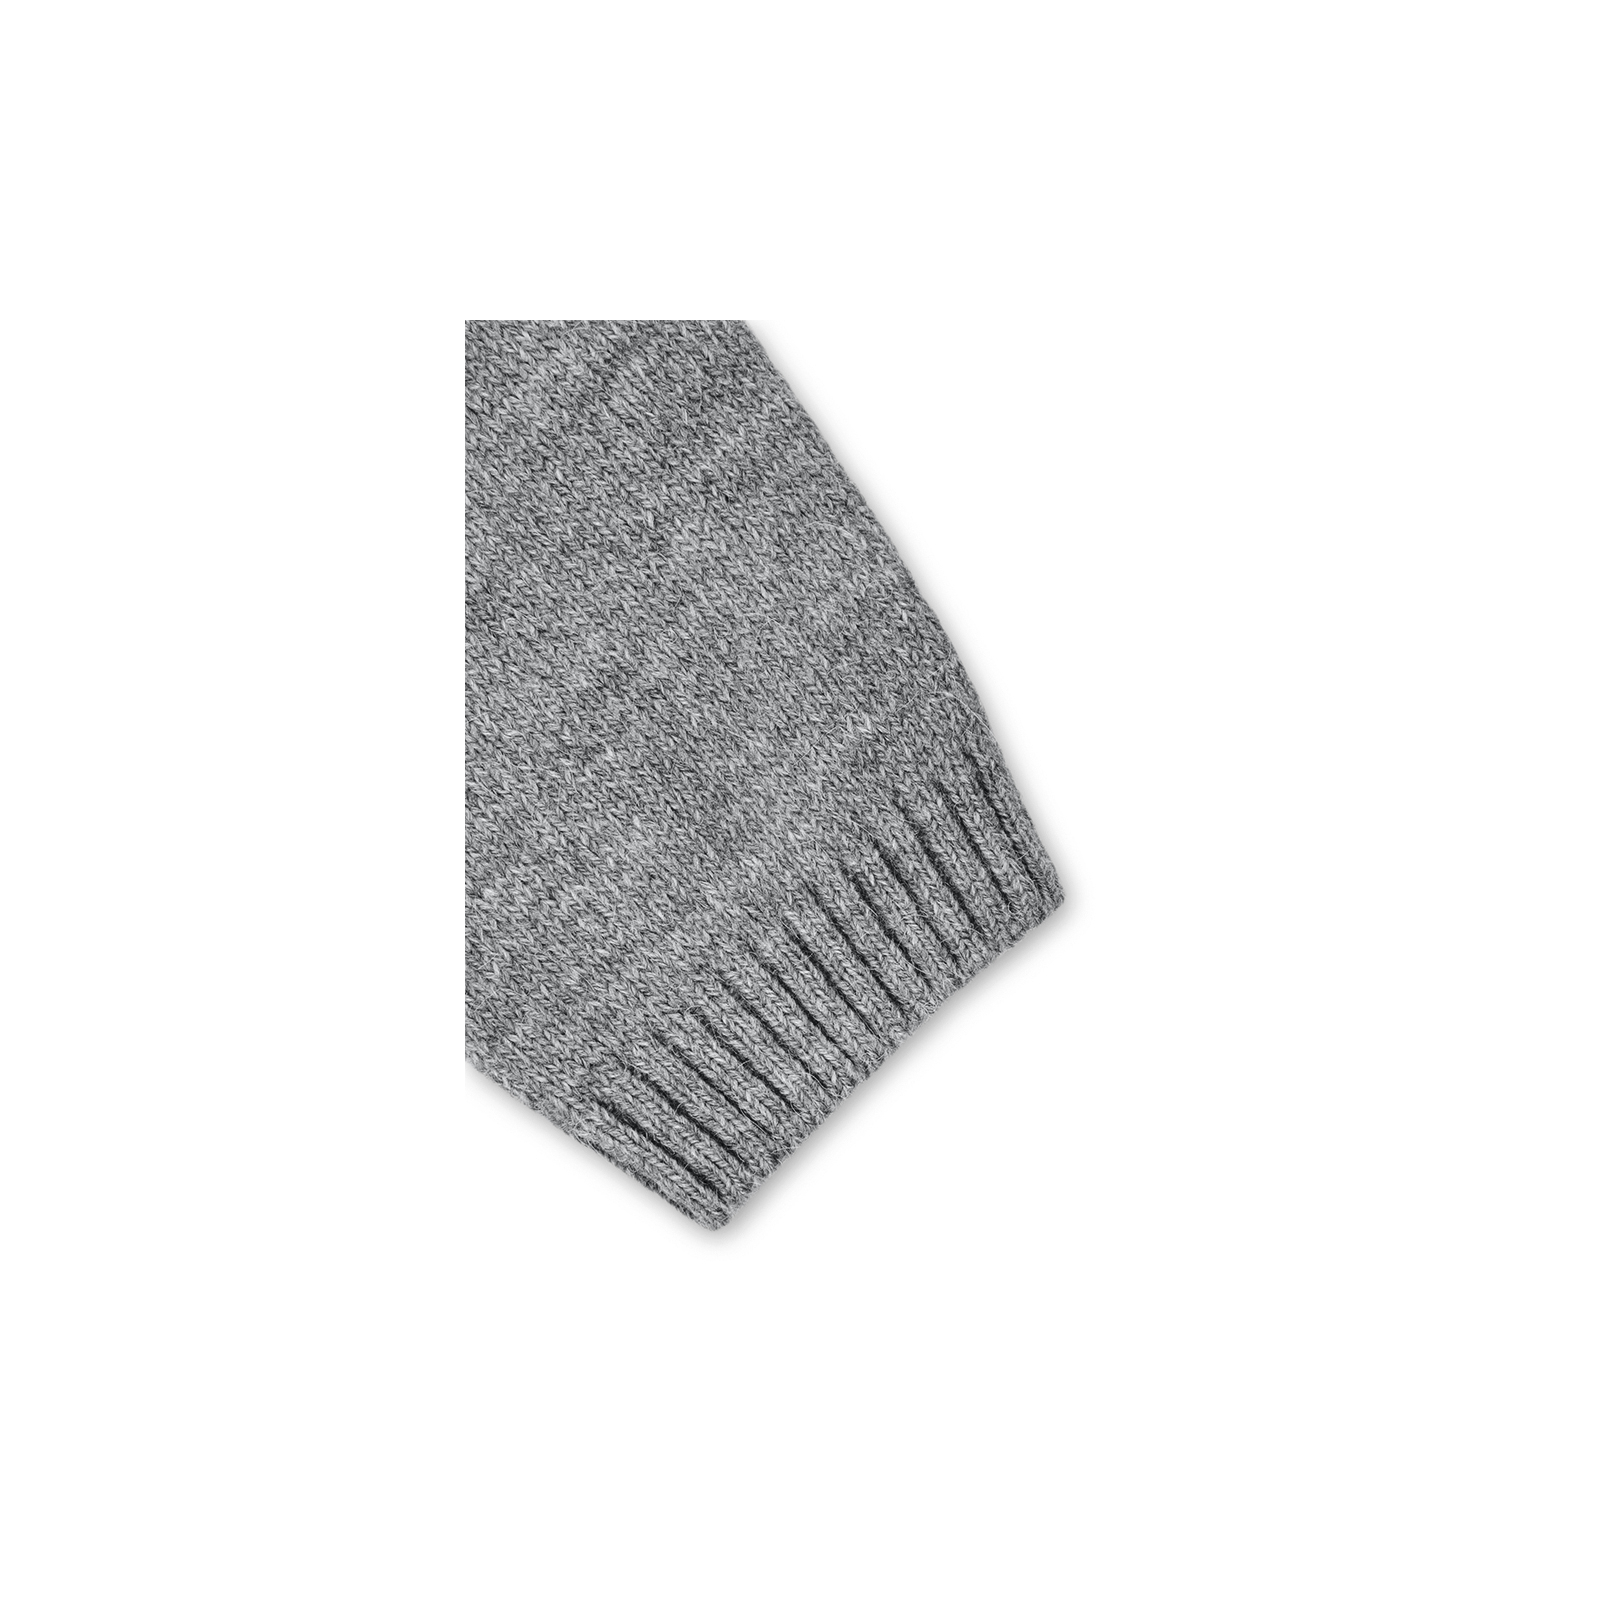 Кофта Breeze джемпер серый меланж со звездочками (T-104-92G-gray) изображение 5